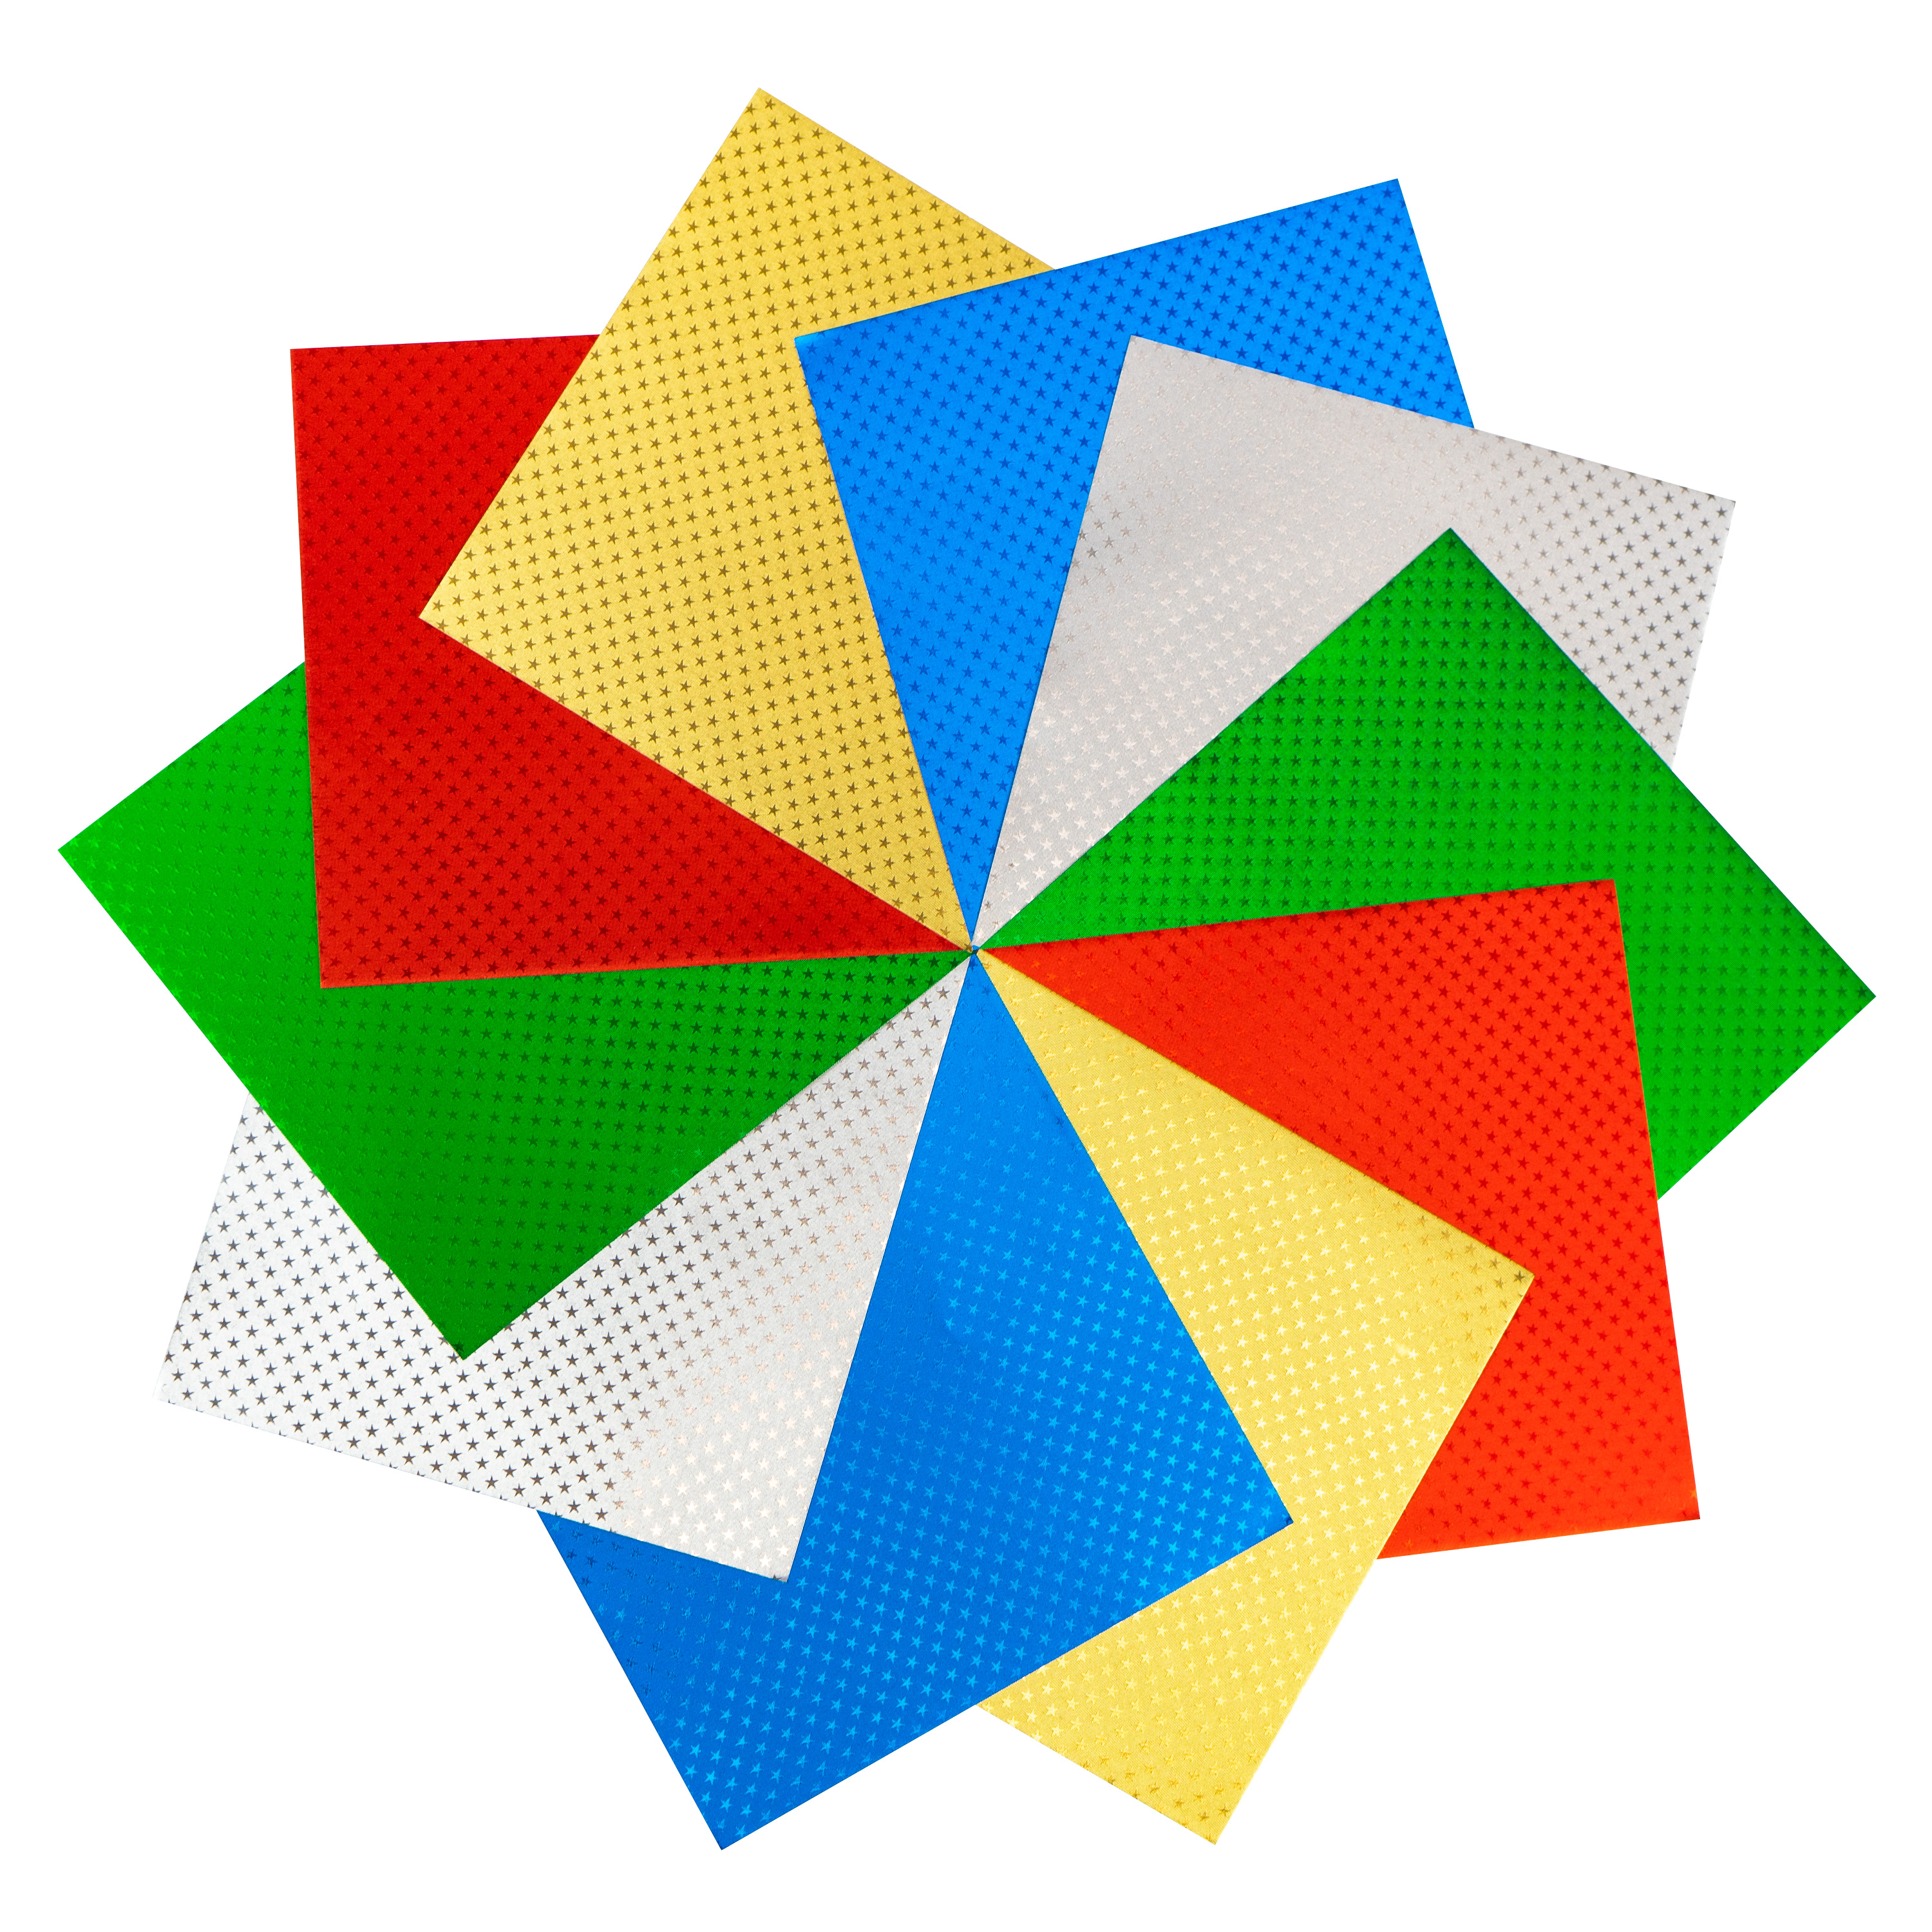 Origami Faltblätter Alufolie, Sternchenprägung, 20 x 20 cm